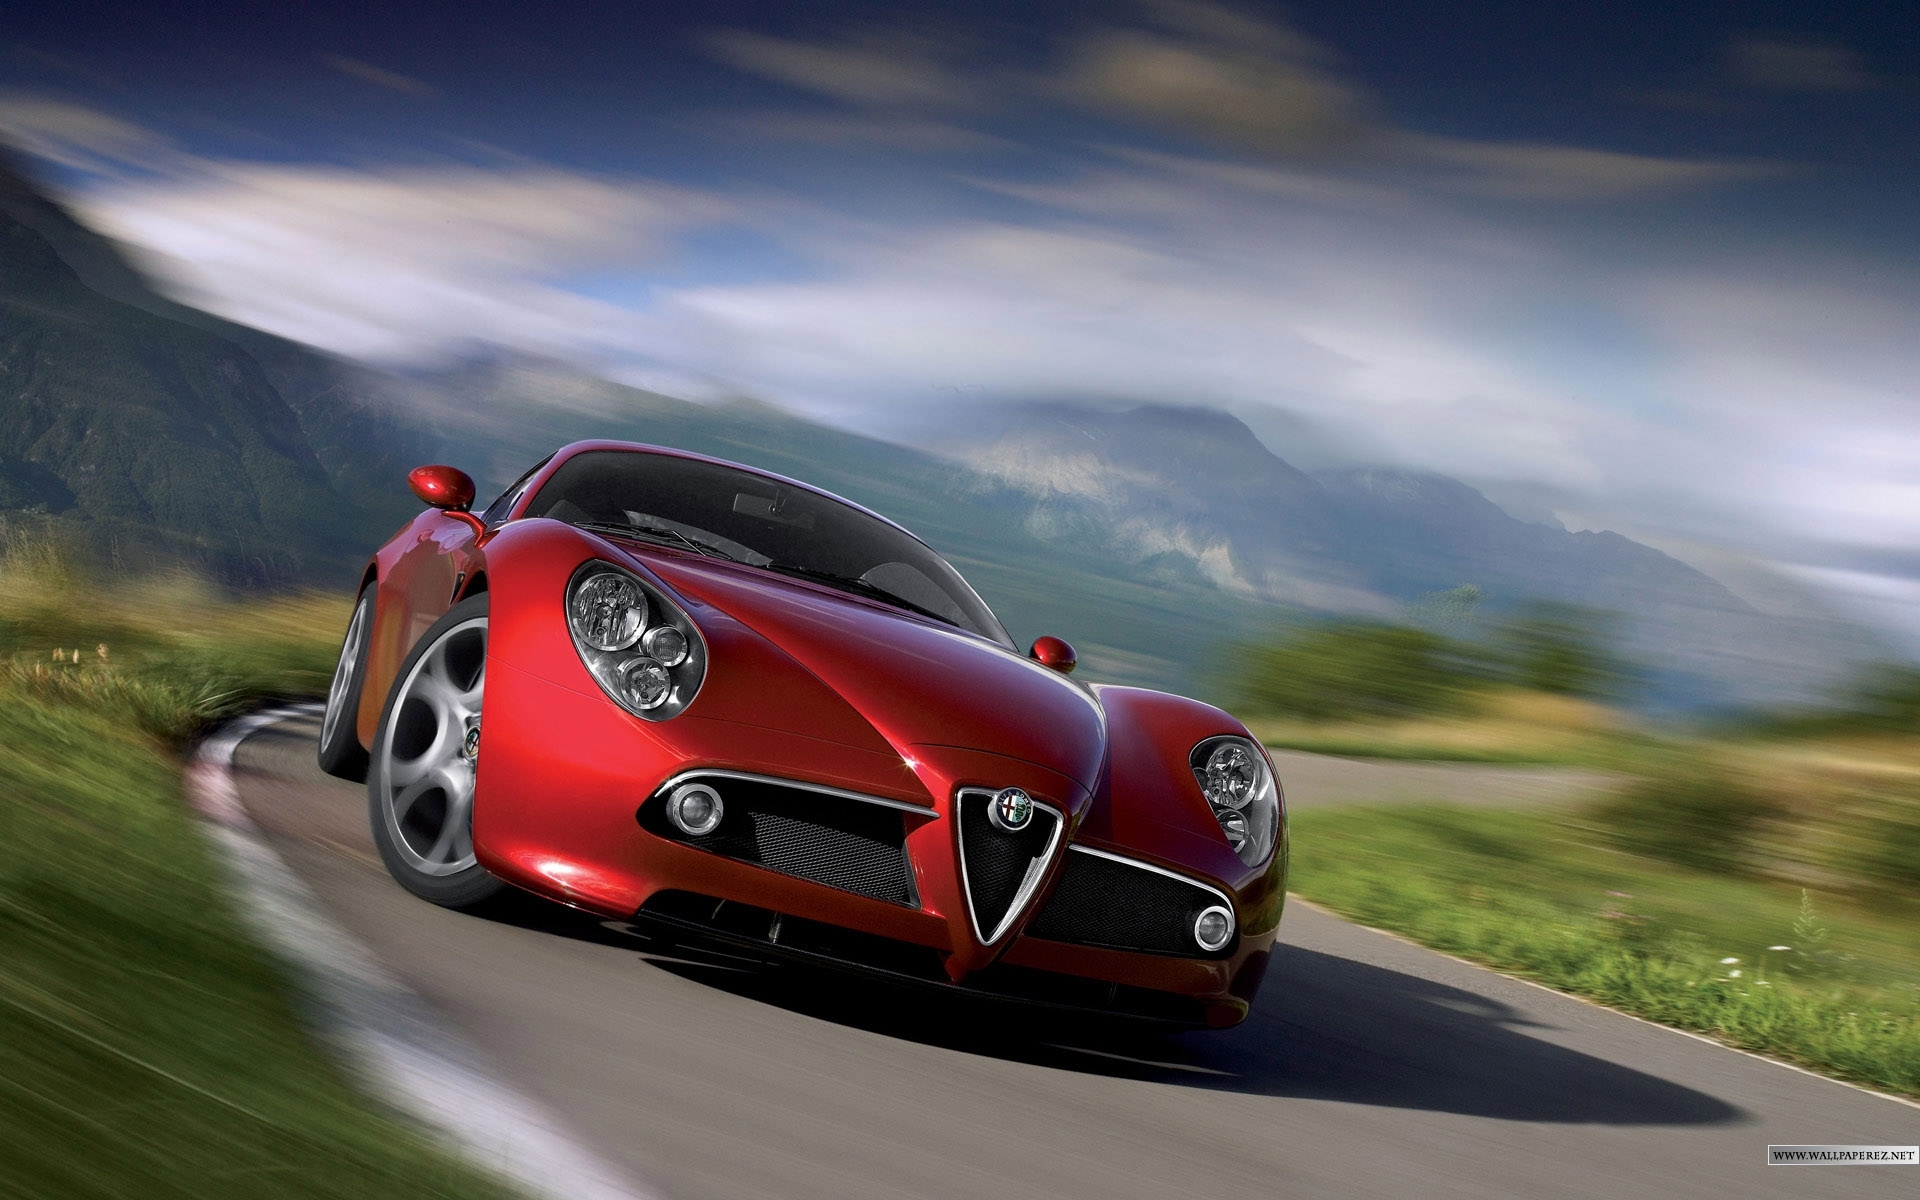 Скачать обои бесплатно Альфа Ромео (Alfa Romeo), Транспорт, Машины картинка на рабочий стол ПК